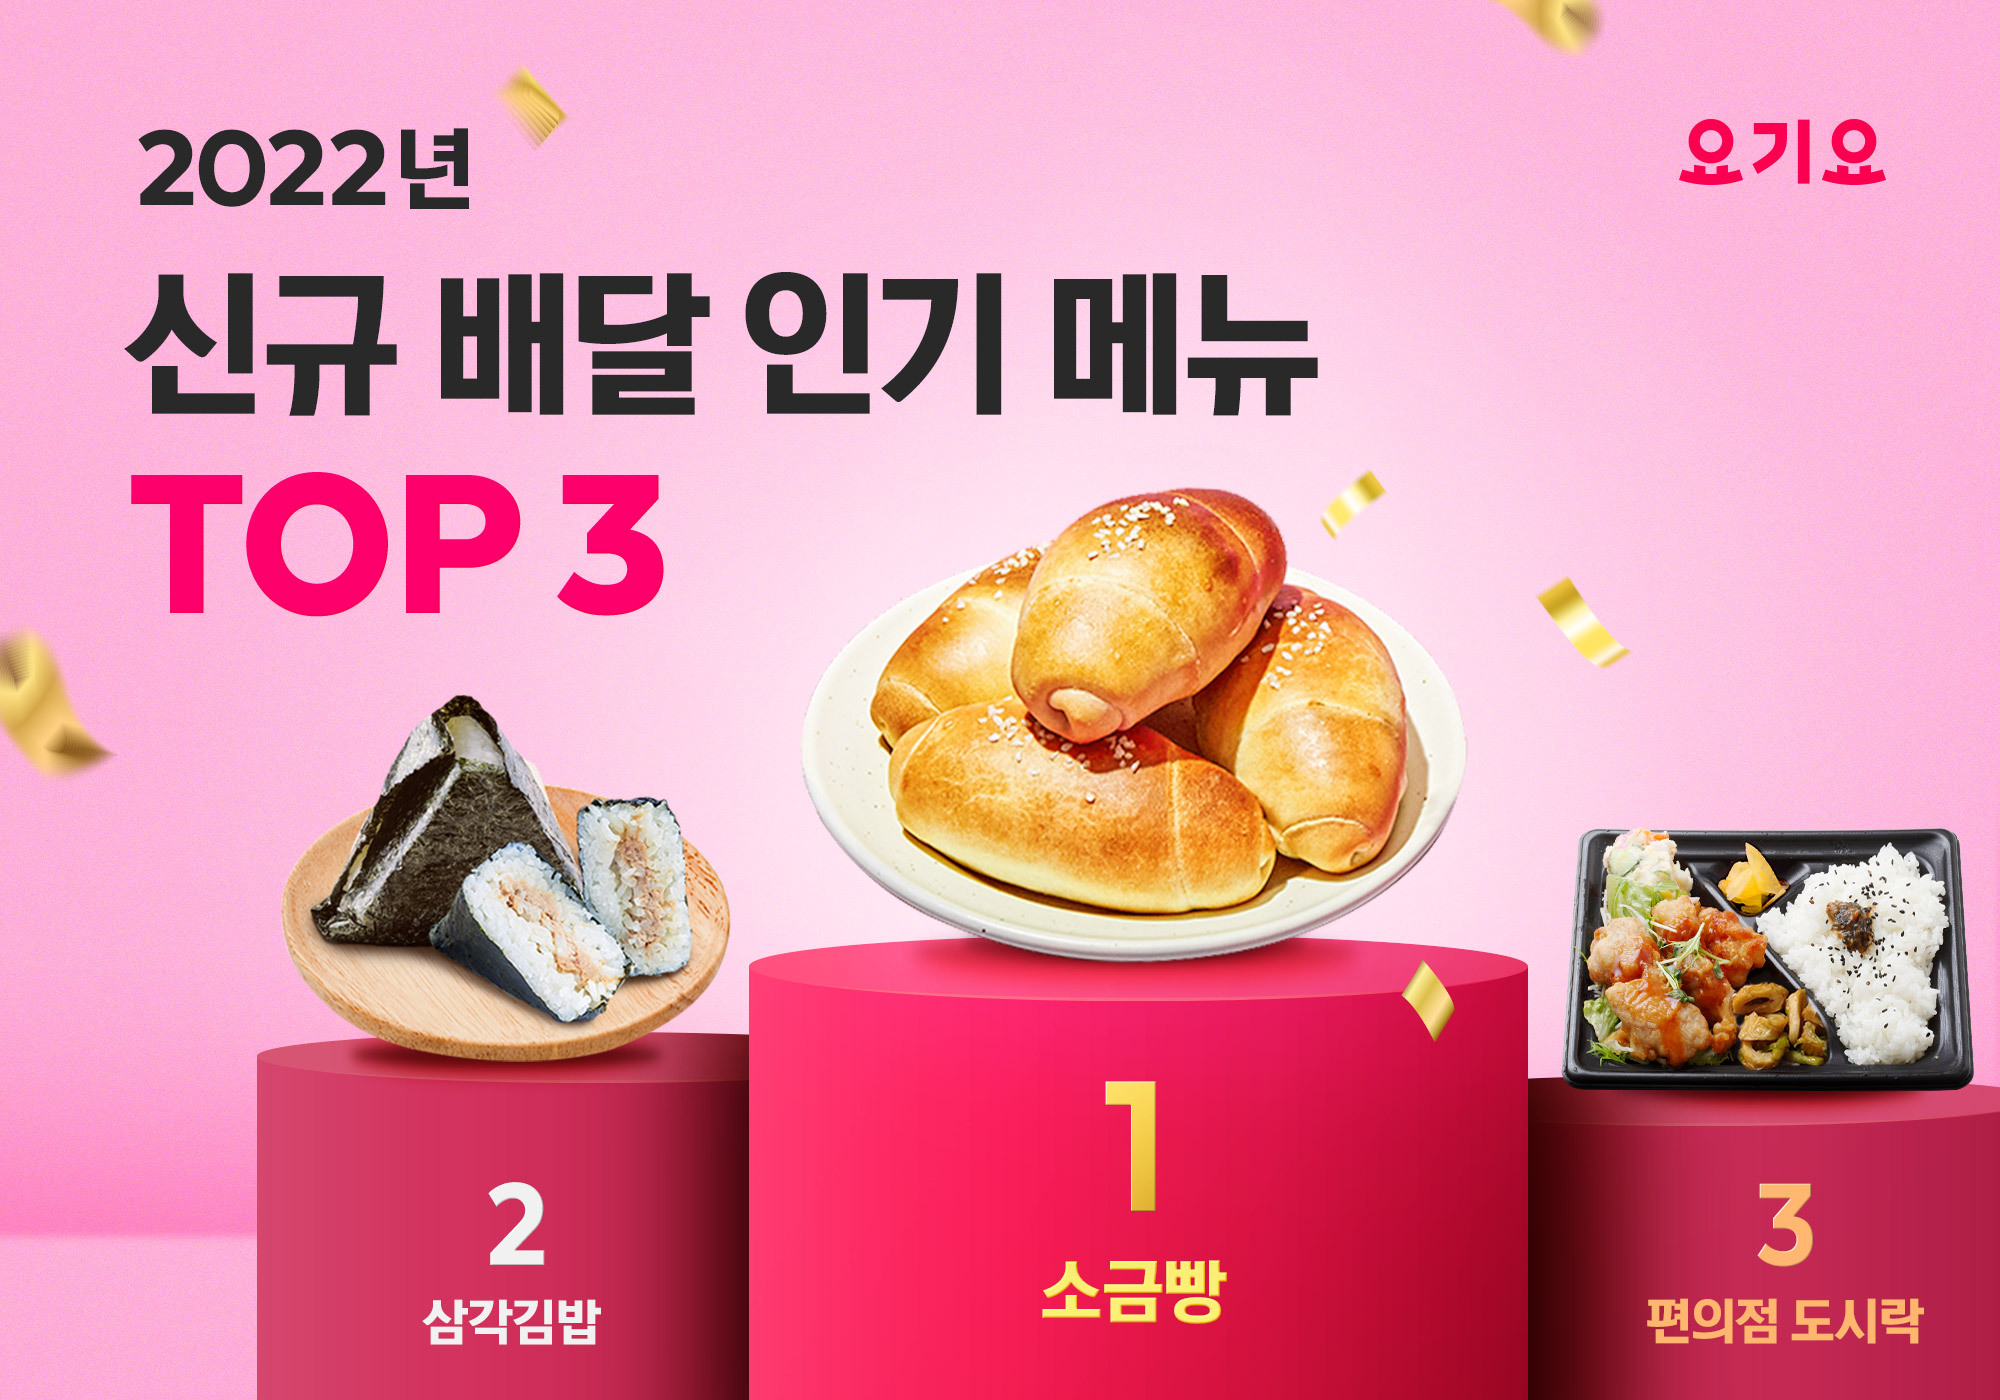 요기요가 발표한 신규 배달 인기 메뉴 1~3위. 소금빵, 삼각김밥, 편의점 도시락 순이었다. 요기요 제공